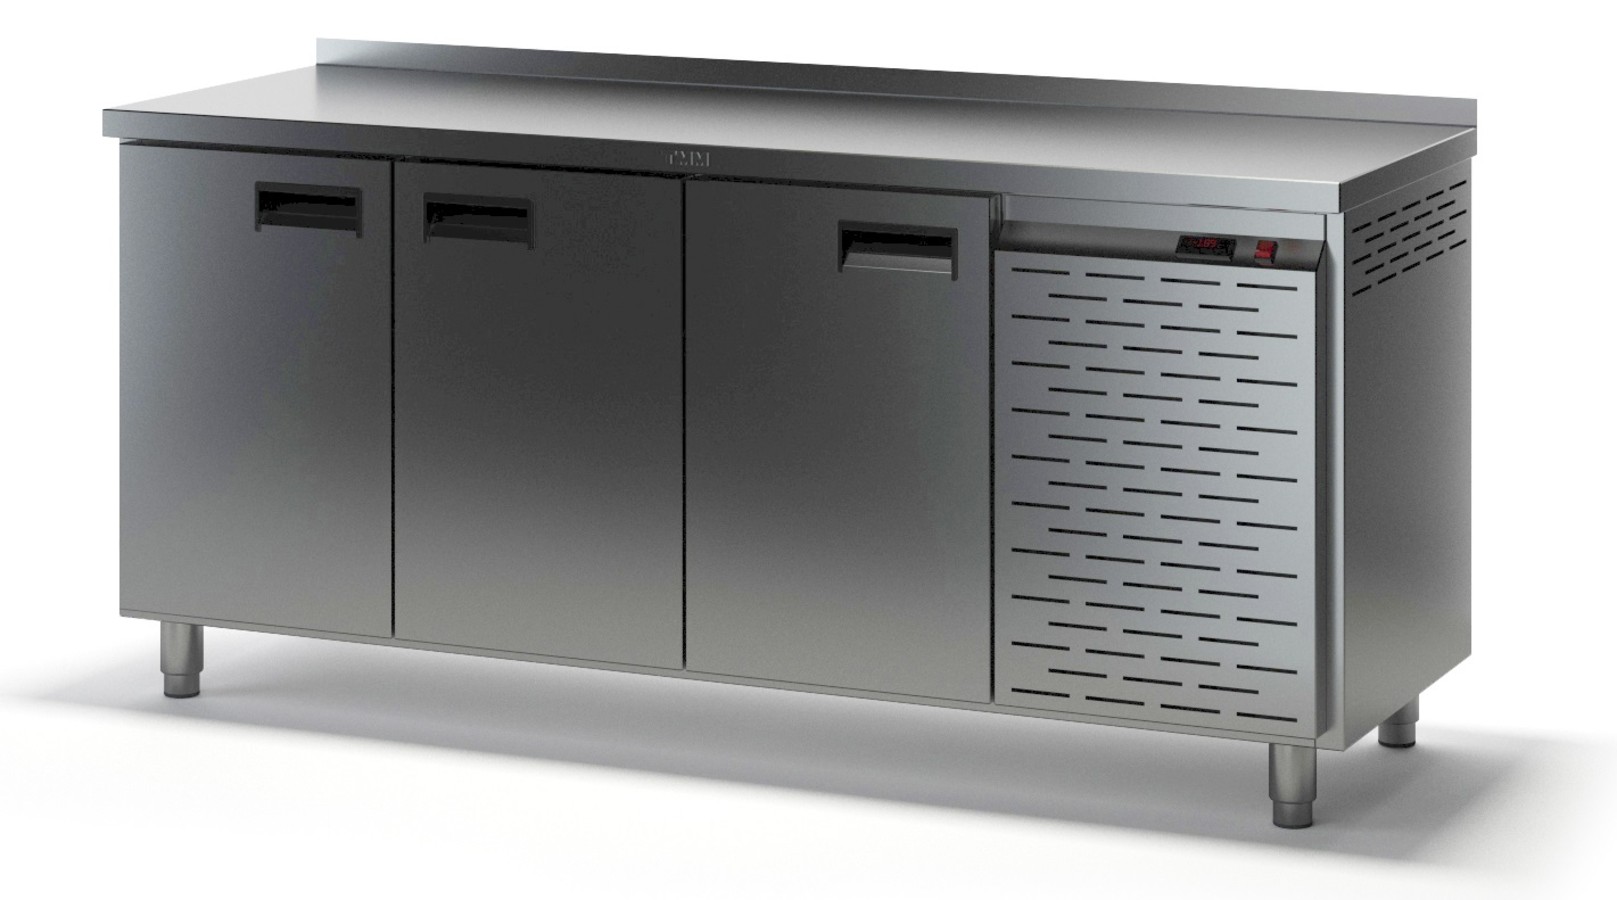 Стол холодильный ТММ СХСБ-2/3Д (1835x600x870)